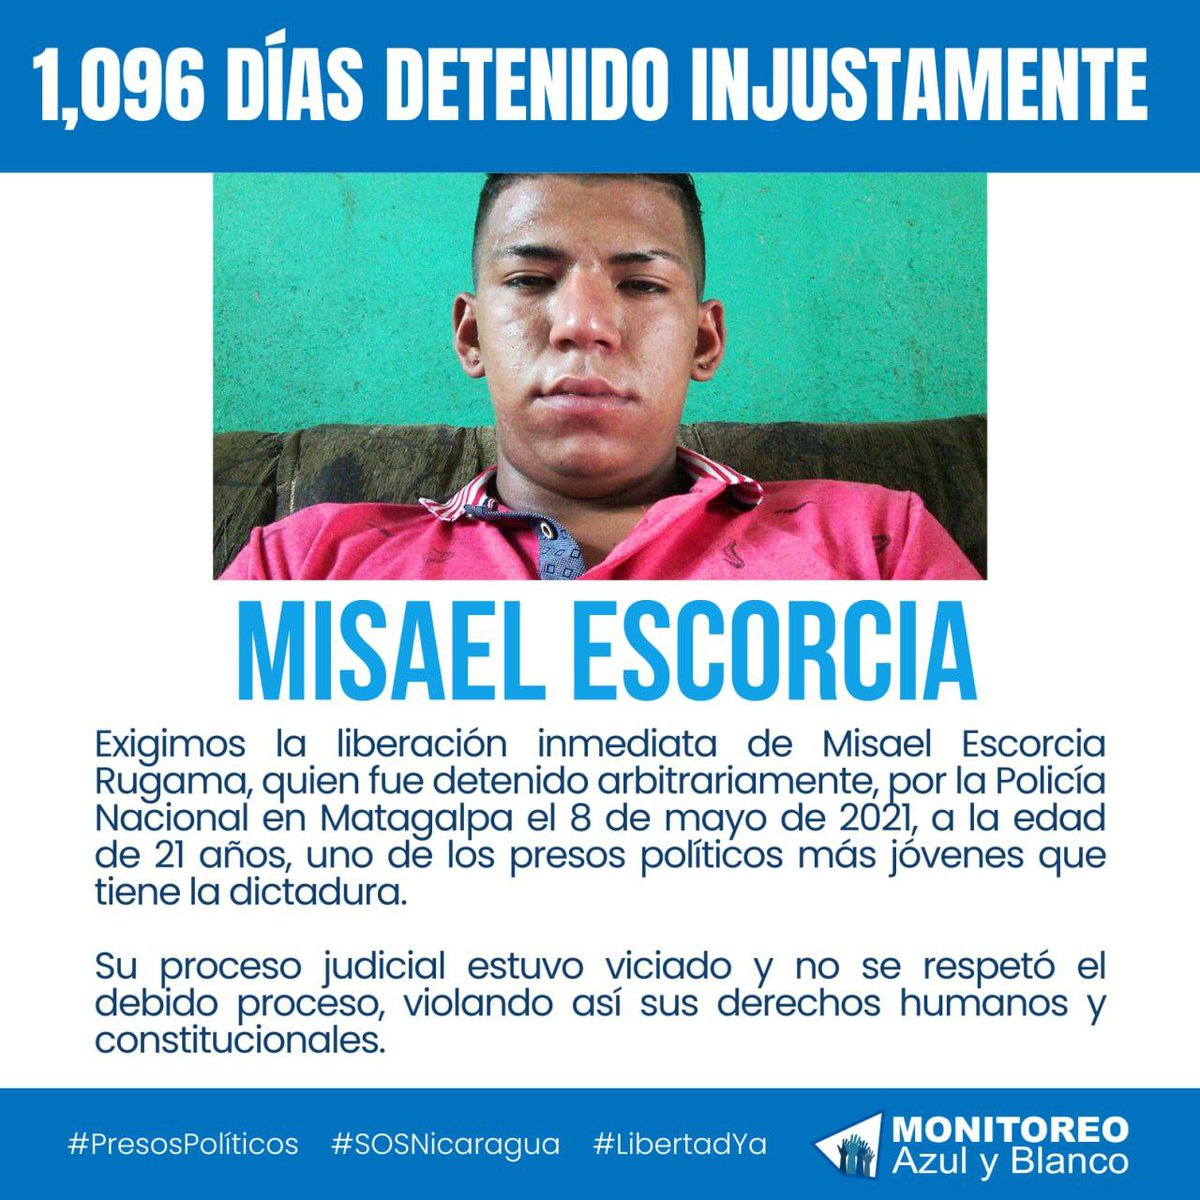 Exigimos la liberación del preso político Misael Escorcia  Rugama, quien cumple 3 años de estar  injustamente detenido #LibertadYA #SOSNicaragua #PresosPolíticos